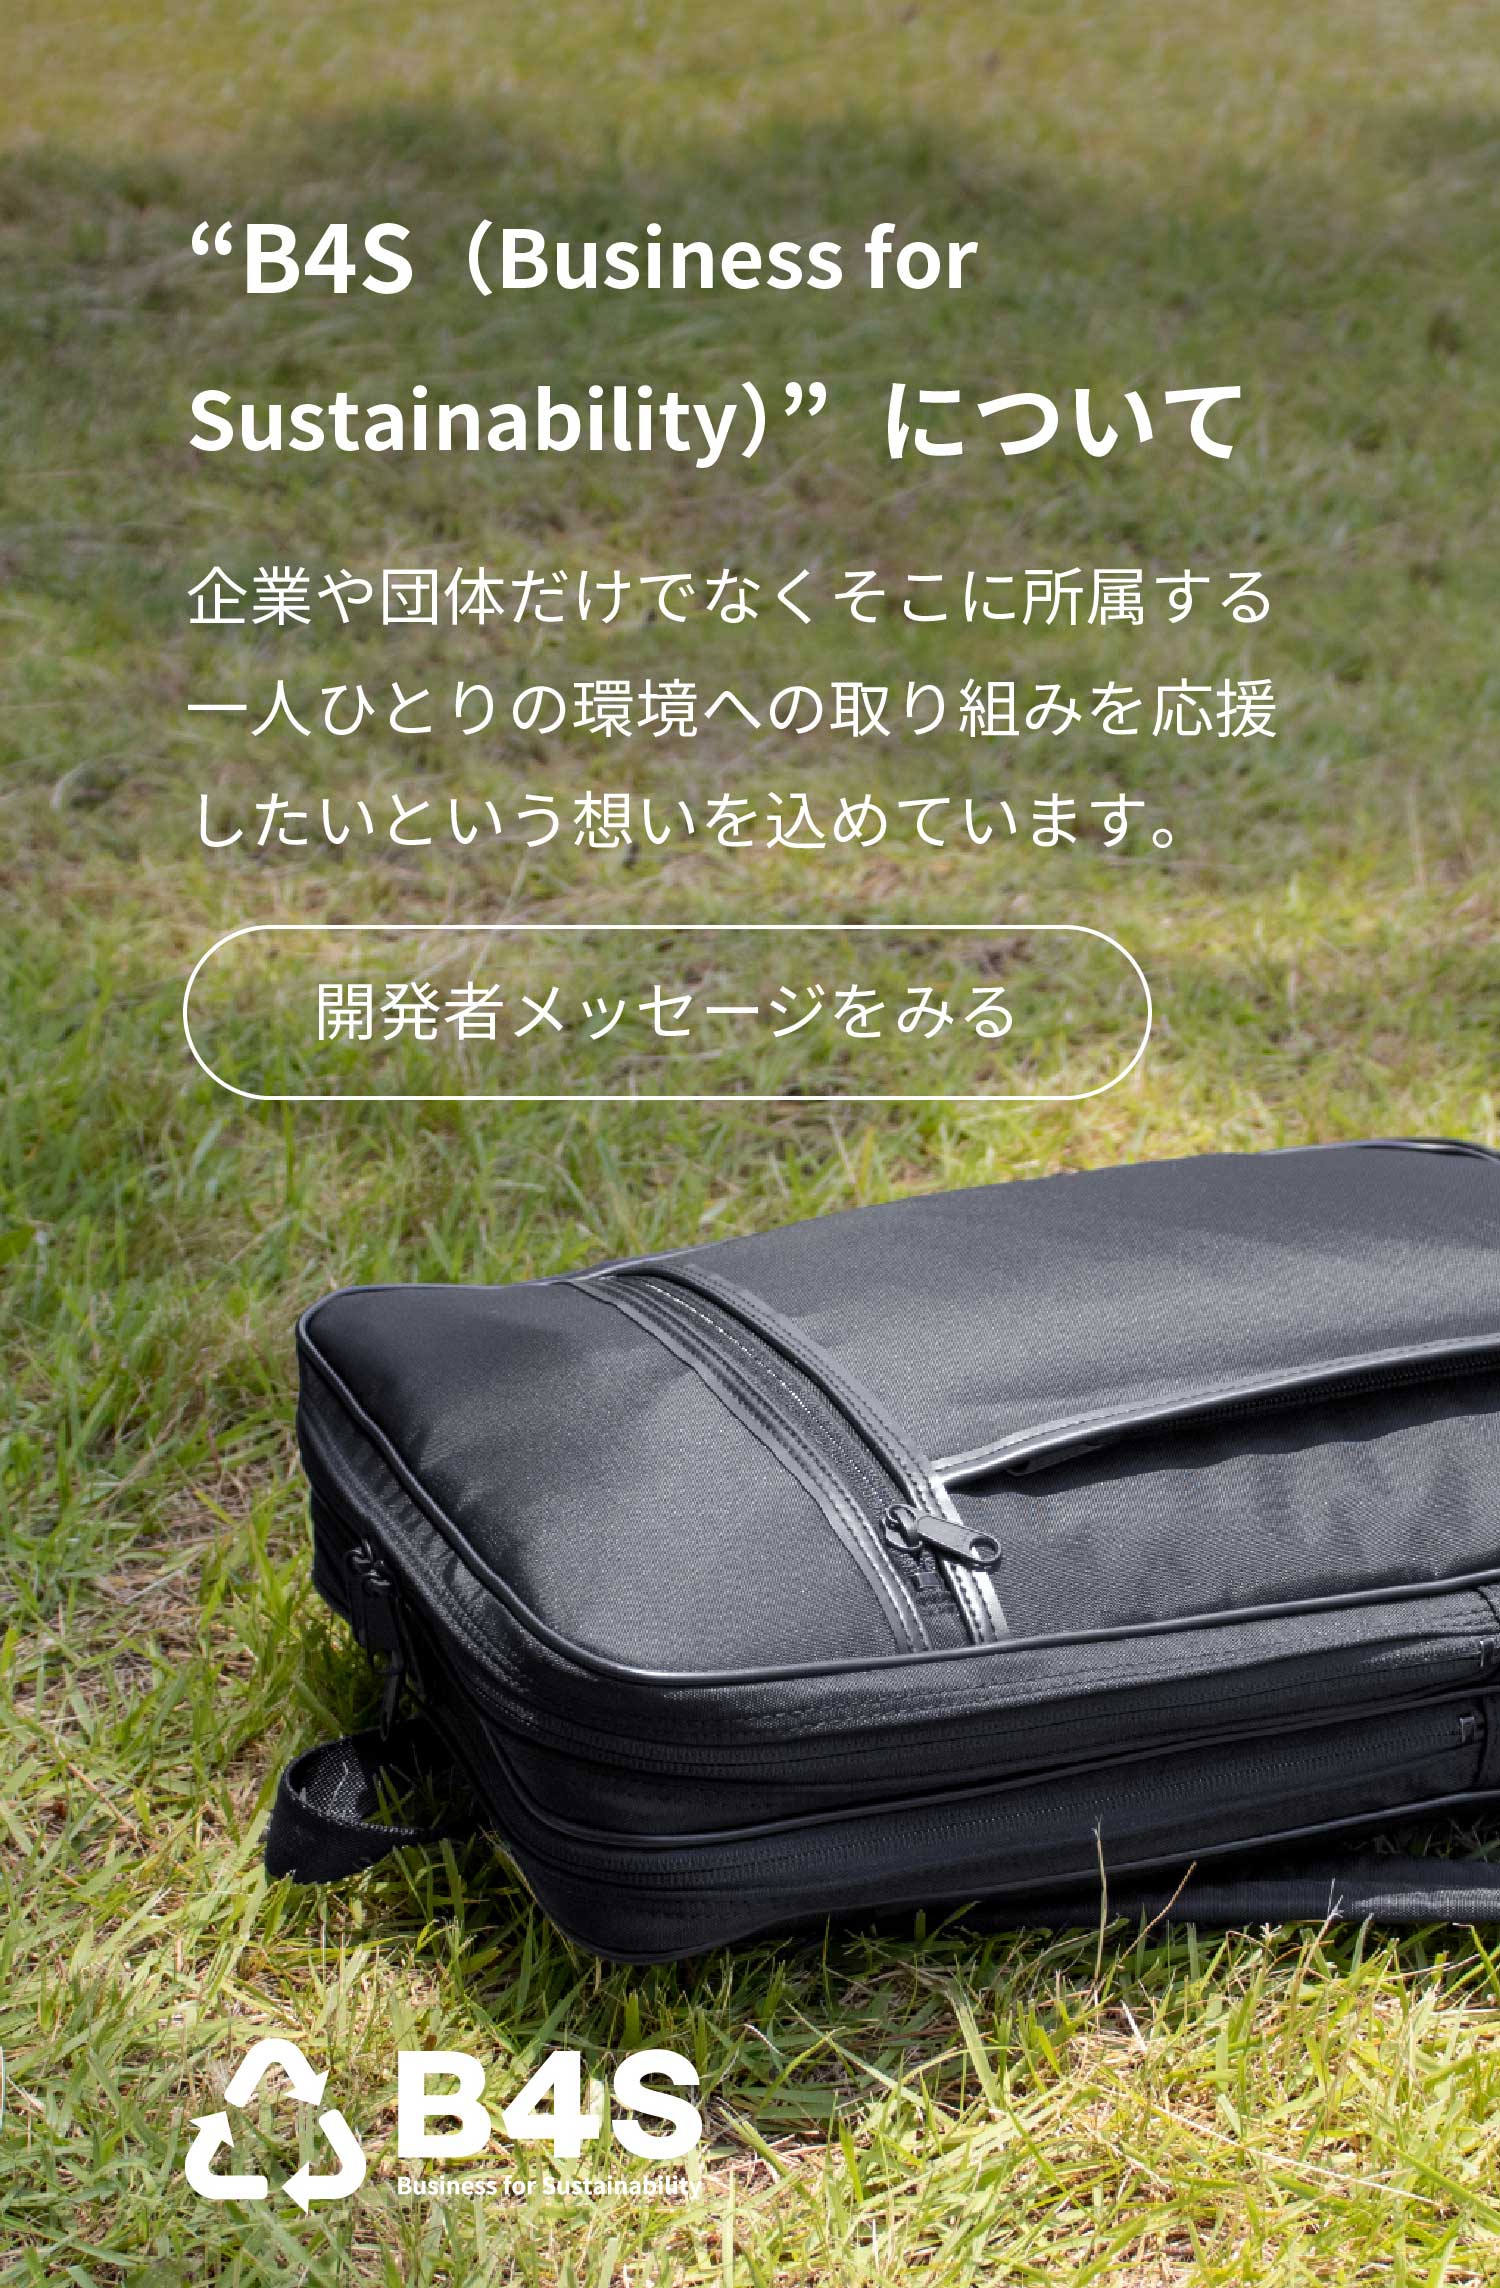 交換無料！ aso B4S backpack 持続可能なビジネススタイル ビジネスバッグ リュック メンズ SDGs リサイクル素材 ナイロン 16インチ A4 ブラック bs-e193-bl